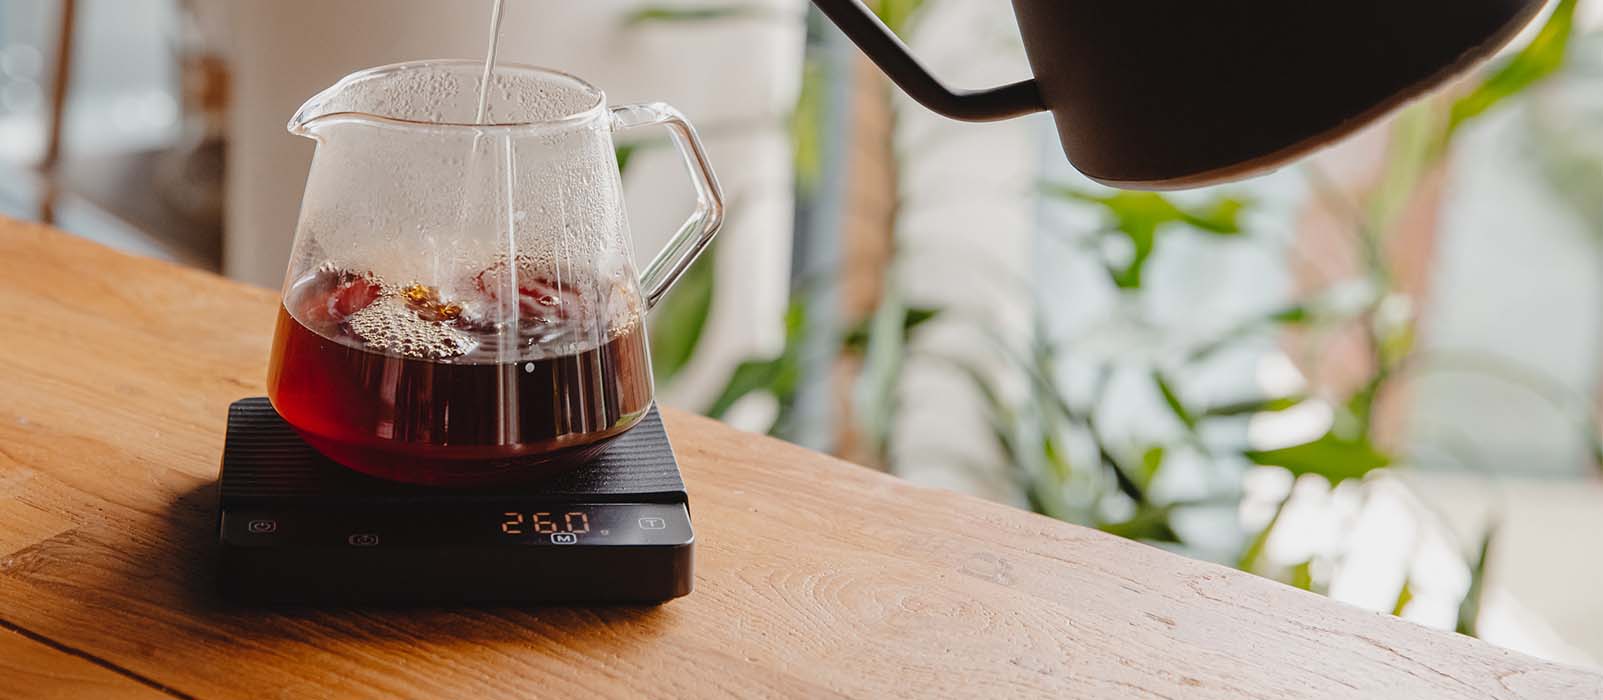 V60 : comment faire un café cette cafetière manuelle ?